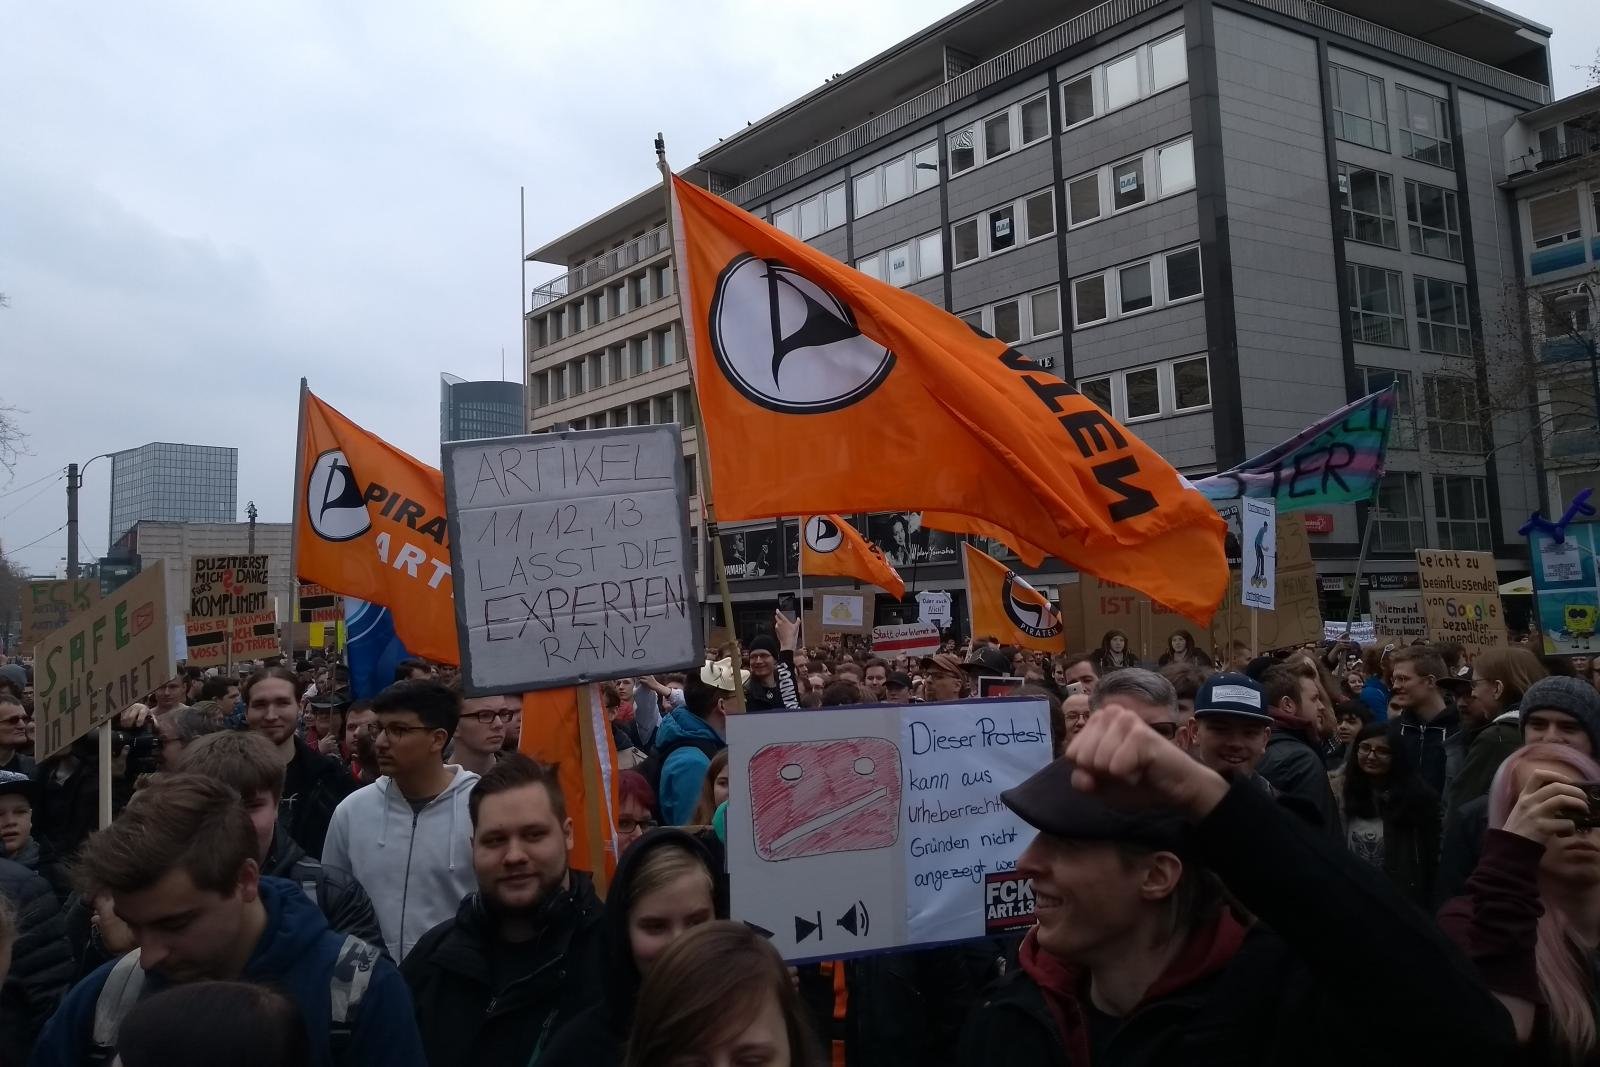 #saveYourInternet-Demo in Dortmund